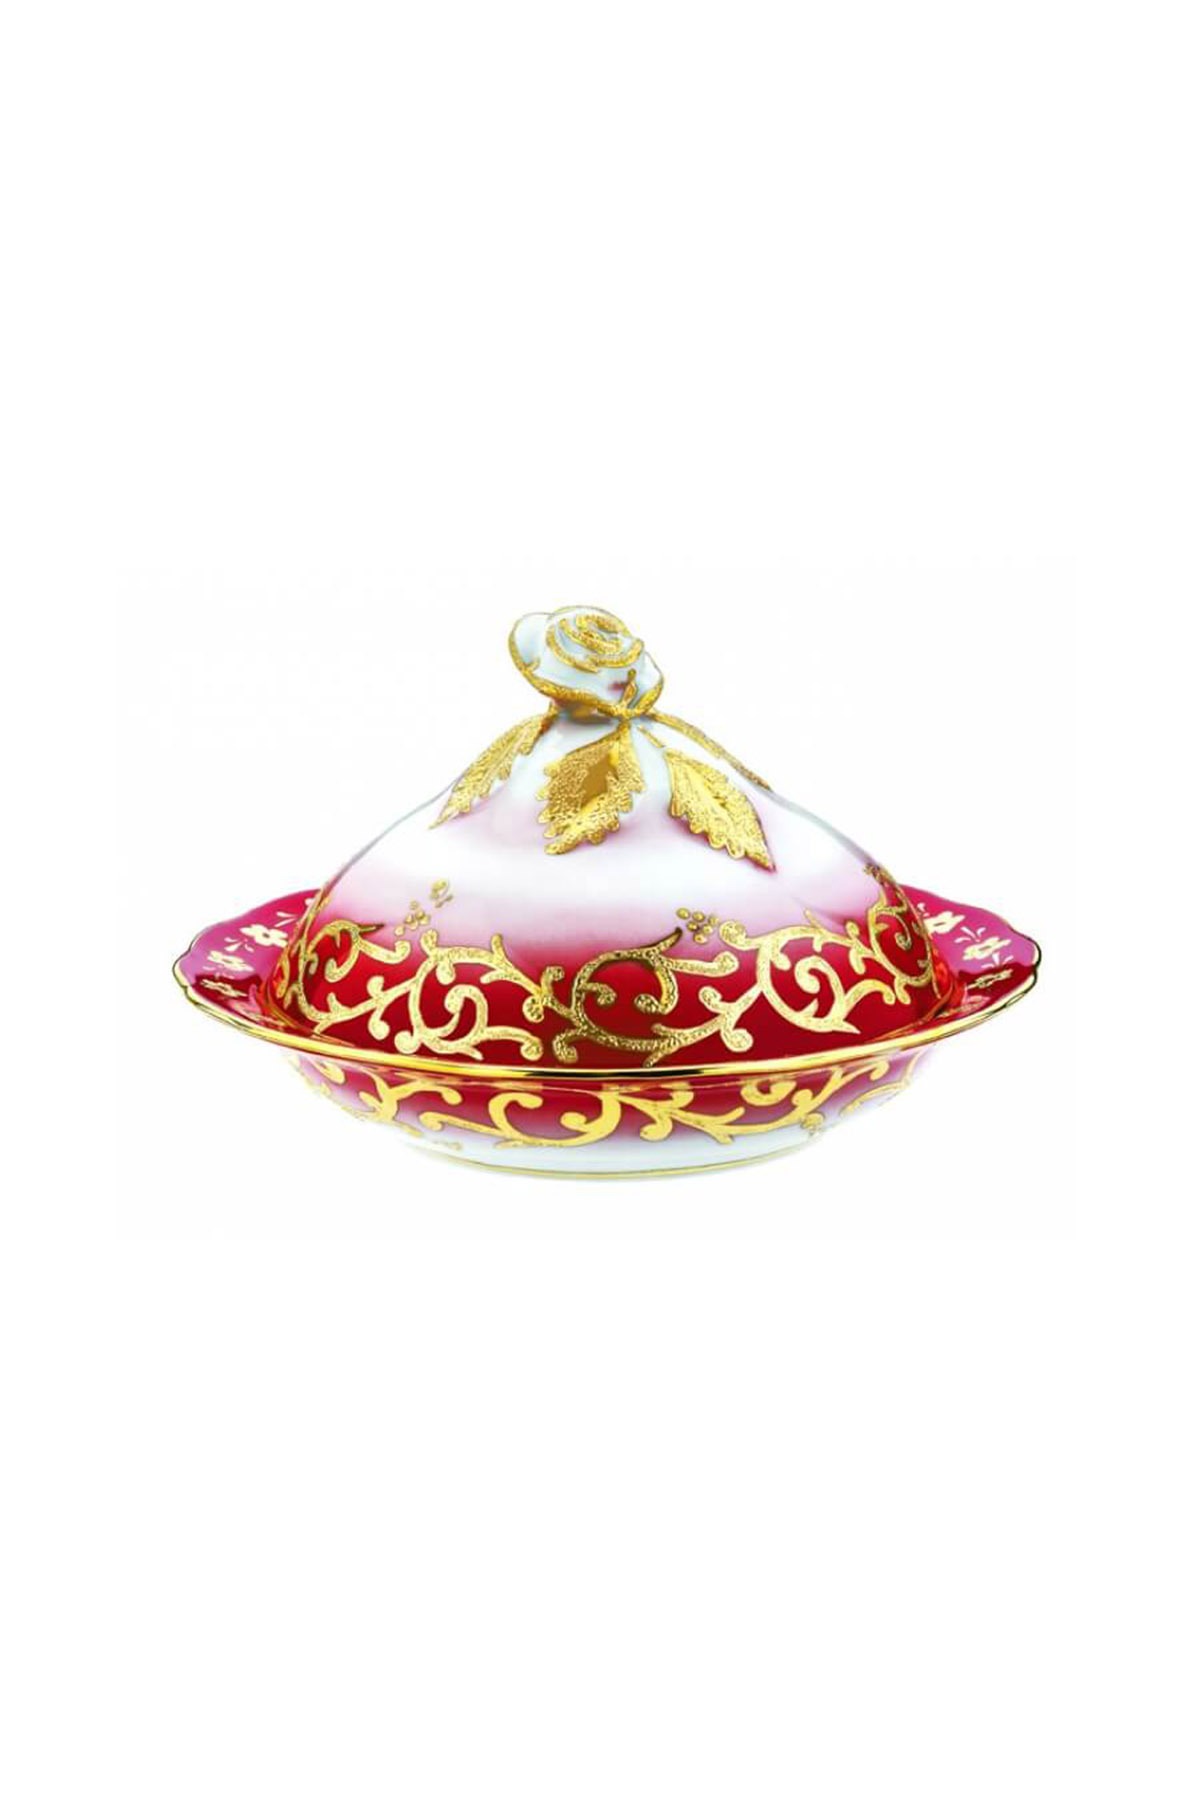 Kütahya Porselen Sultan Şekerlik 20 cm Dekor No:3678 Kırmızı